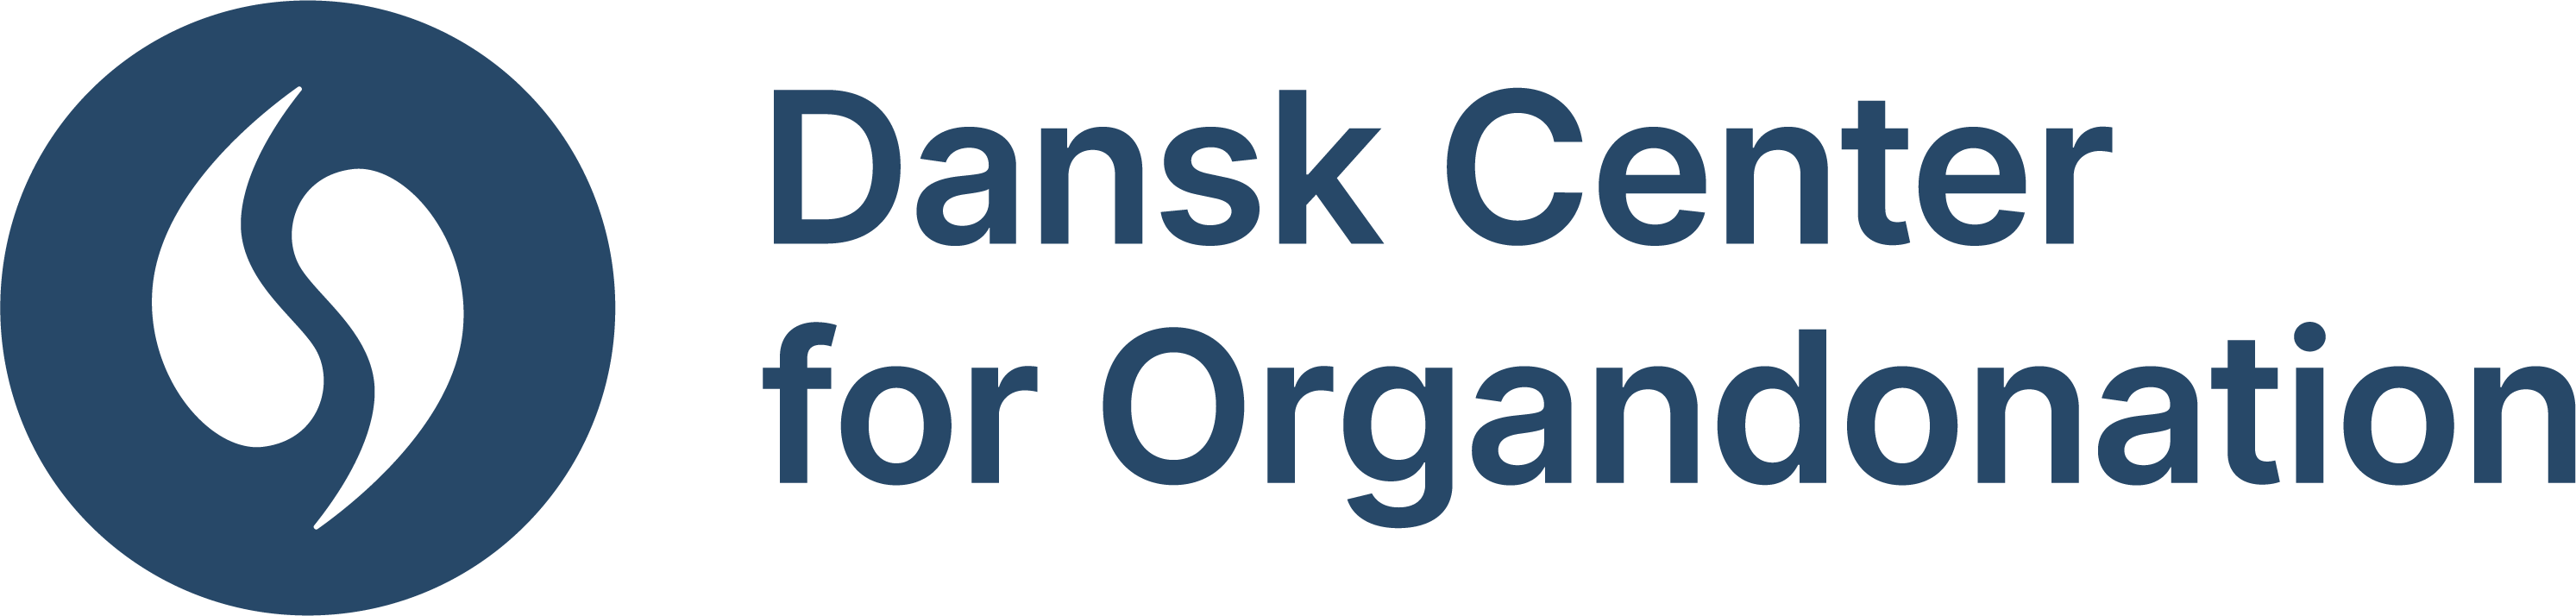 Dansk Center f. Organdonation